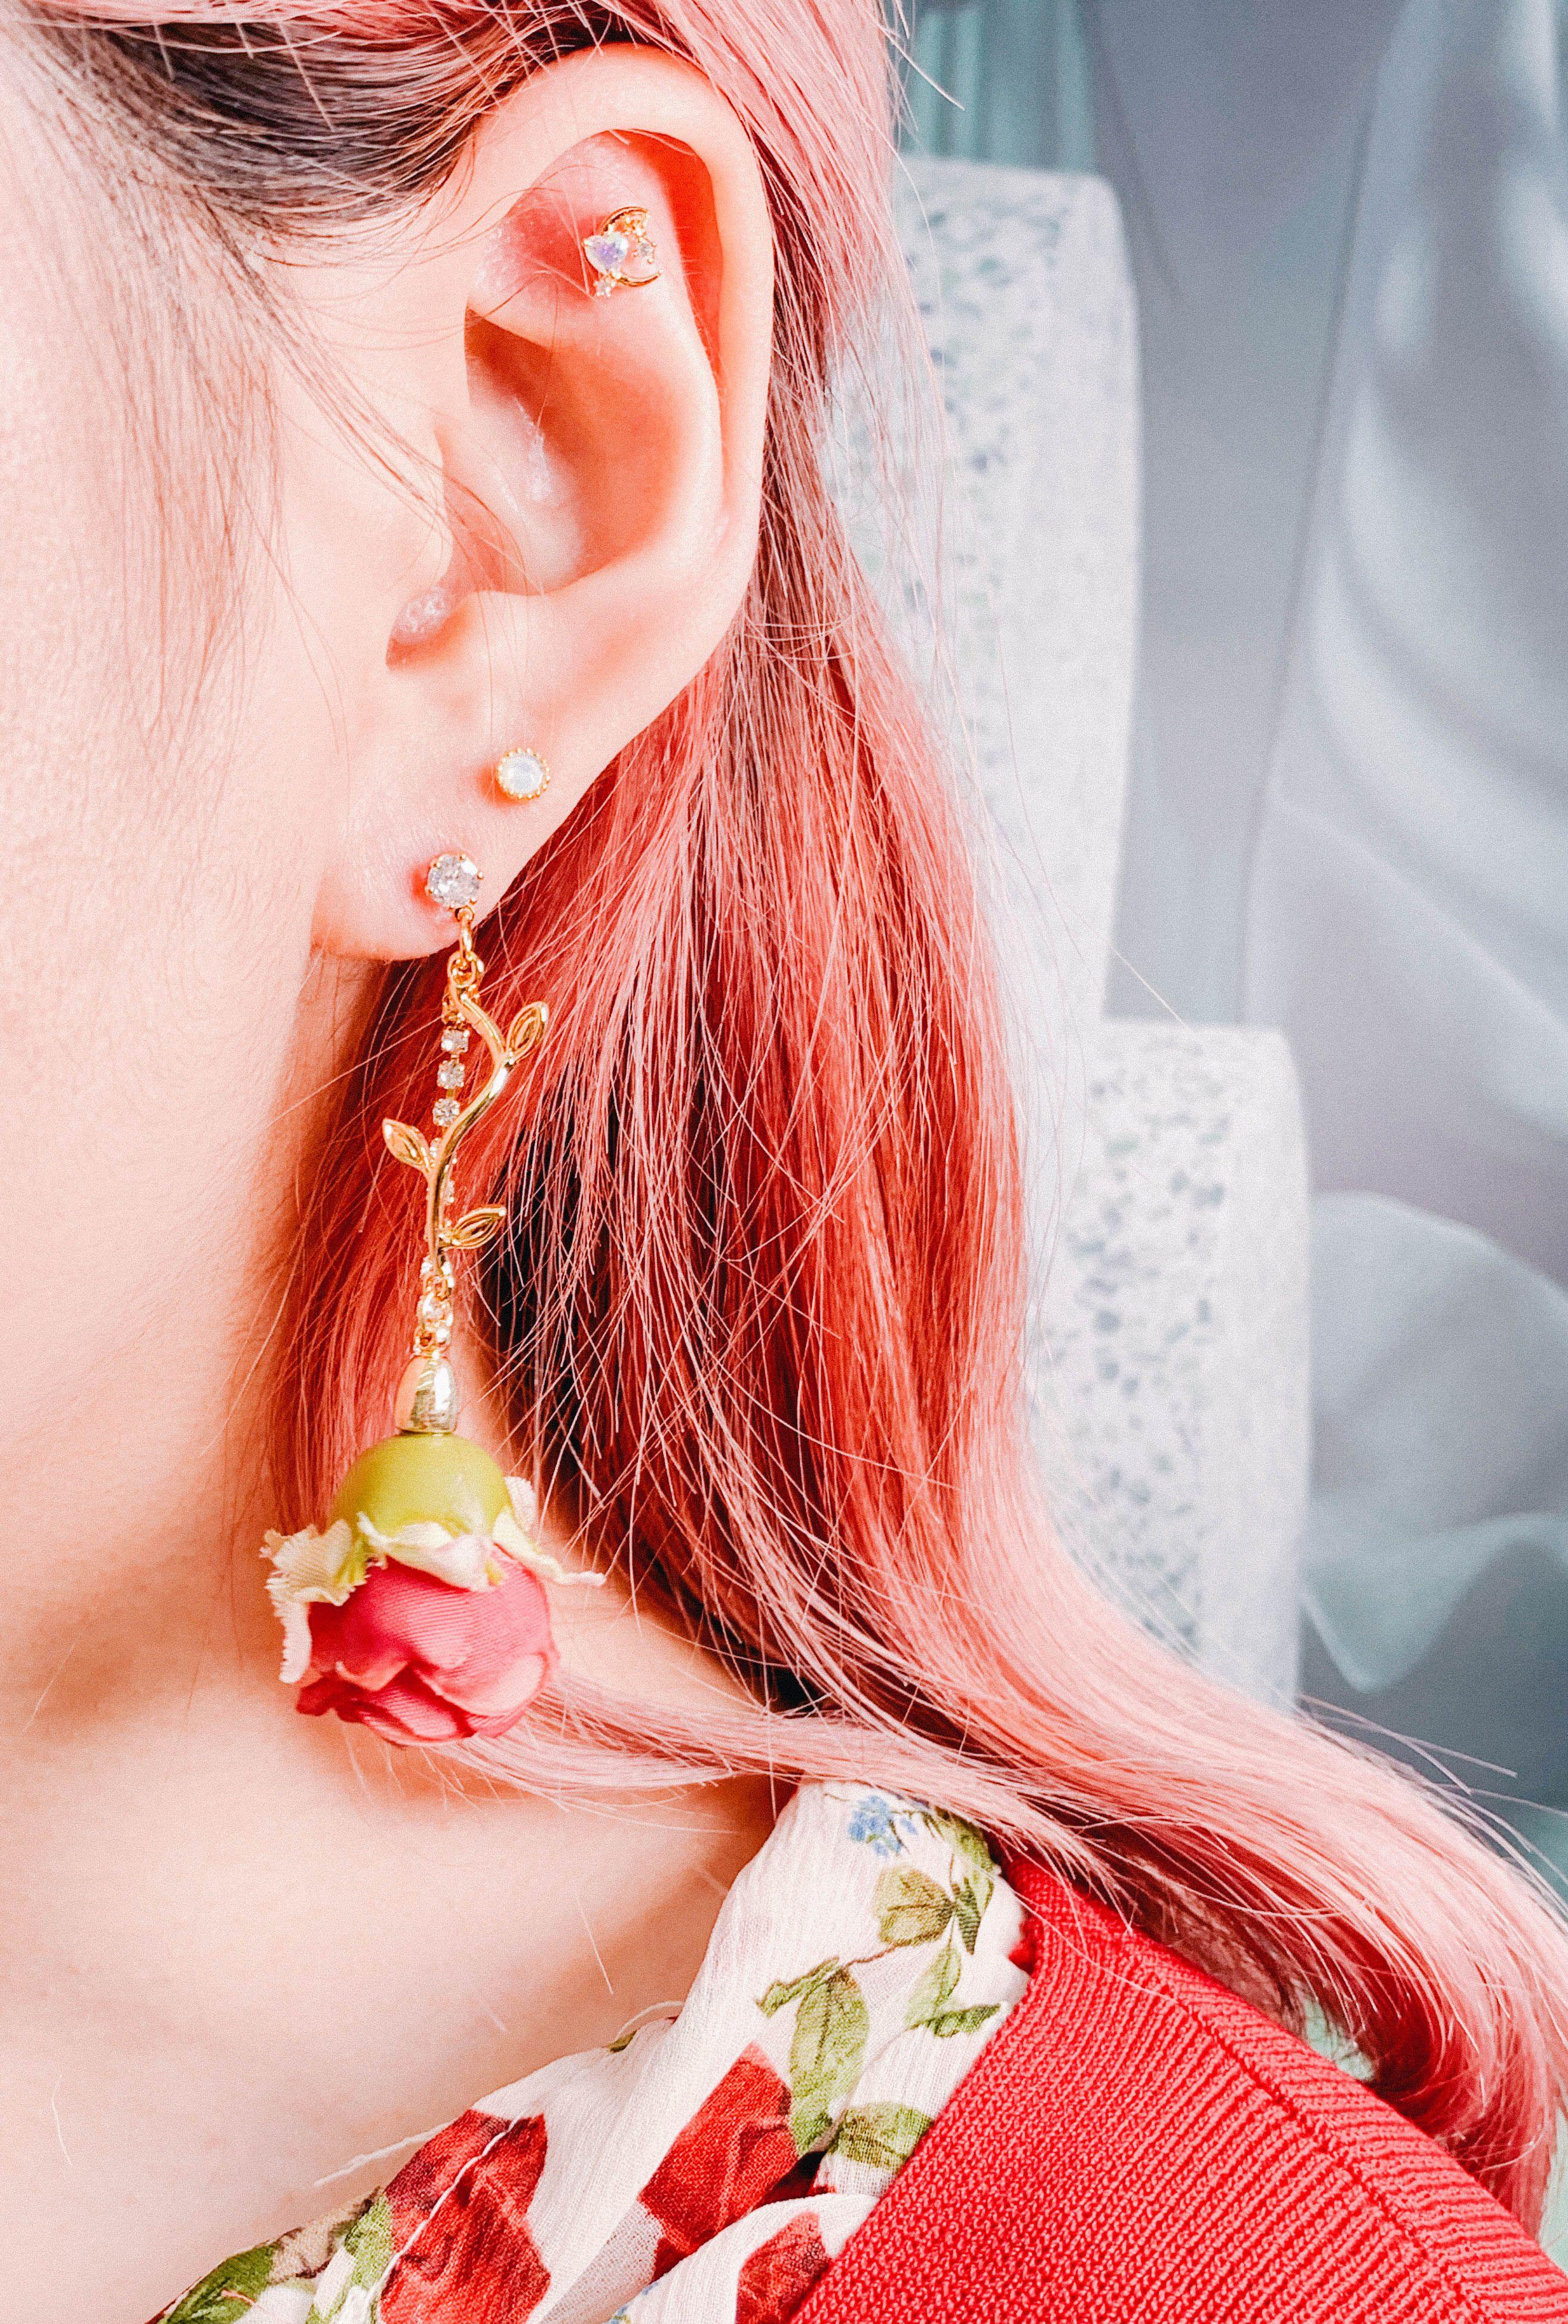 Rosebud (ピアス/イヤリング) Earrings anything else 